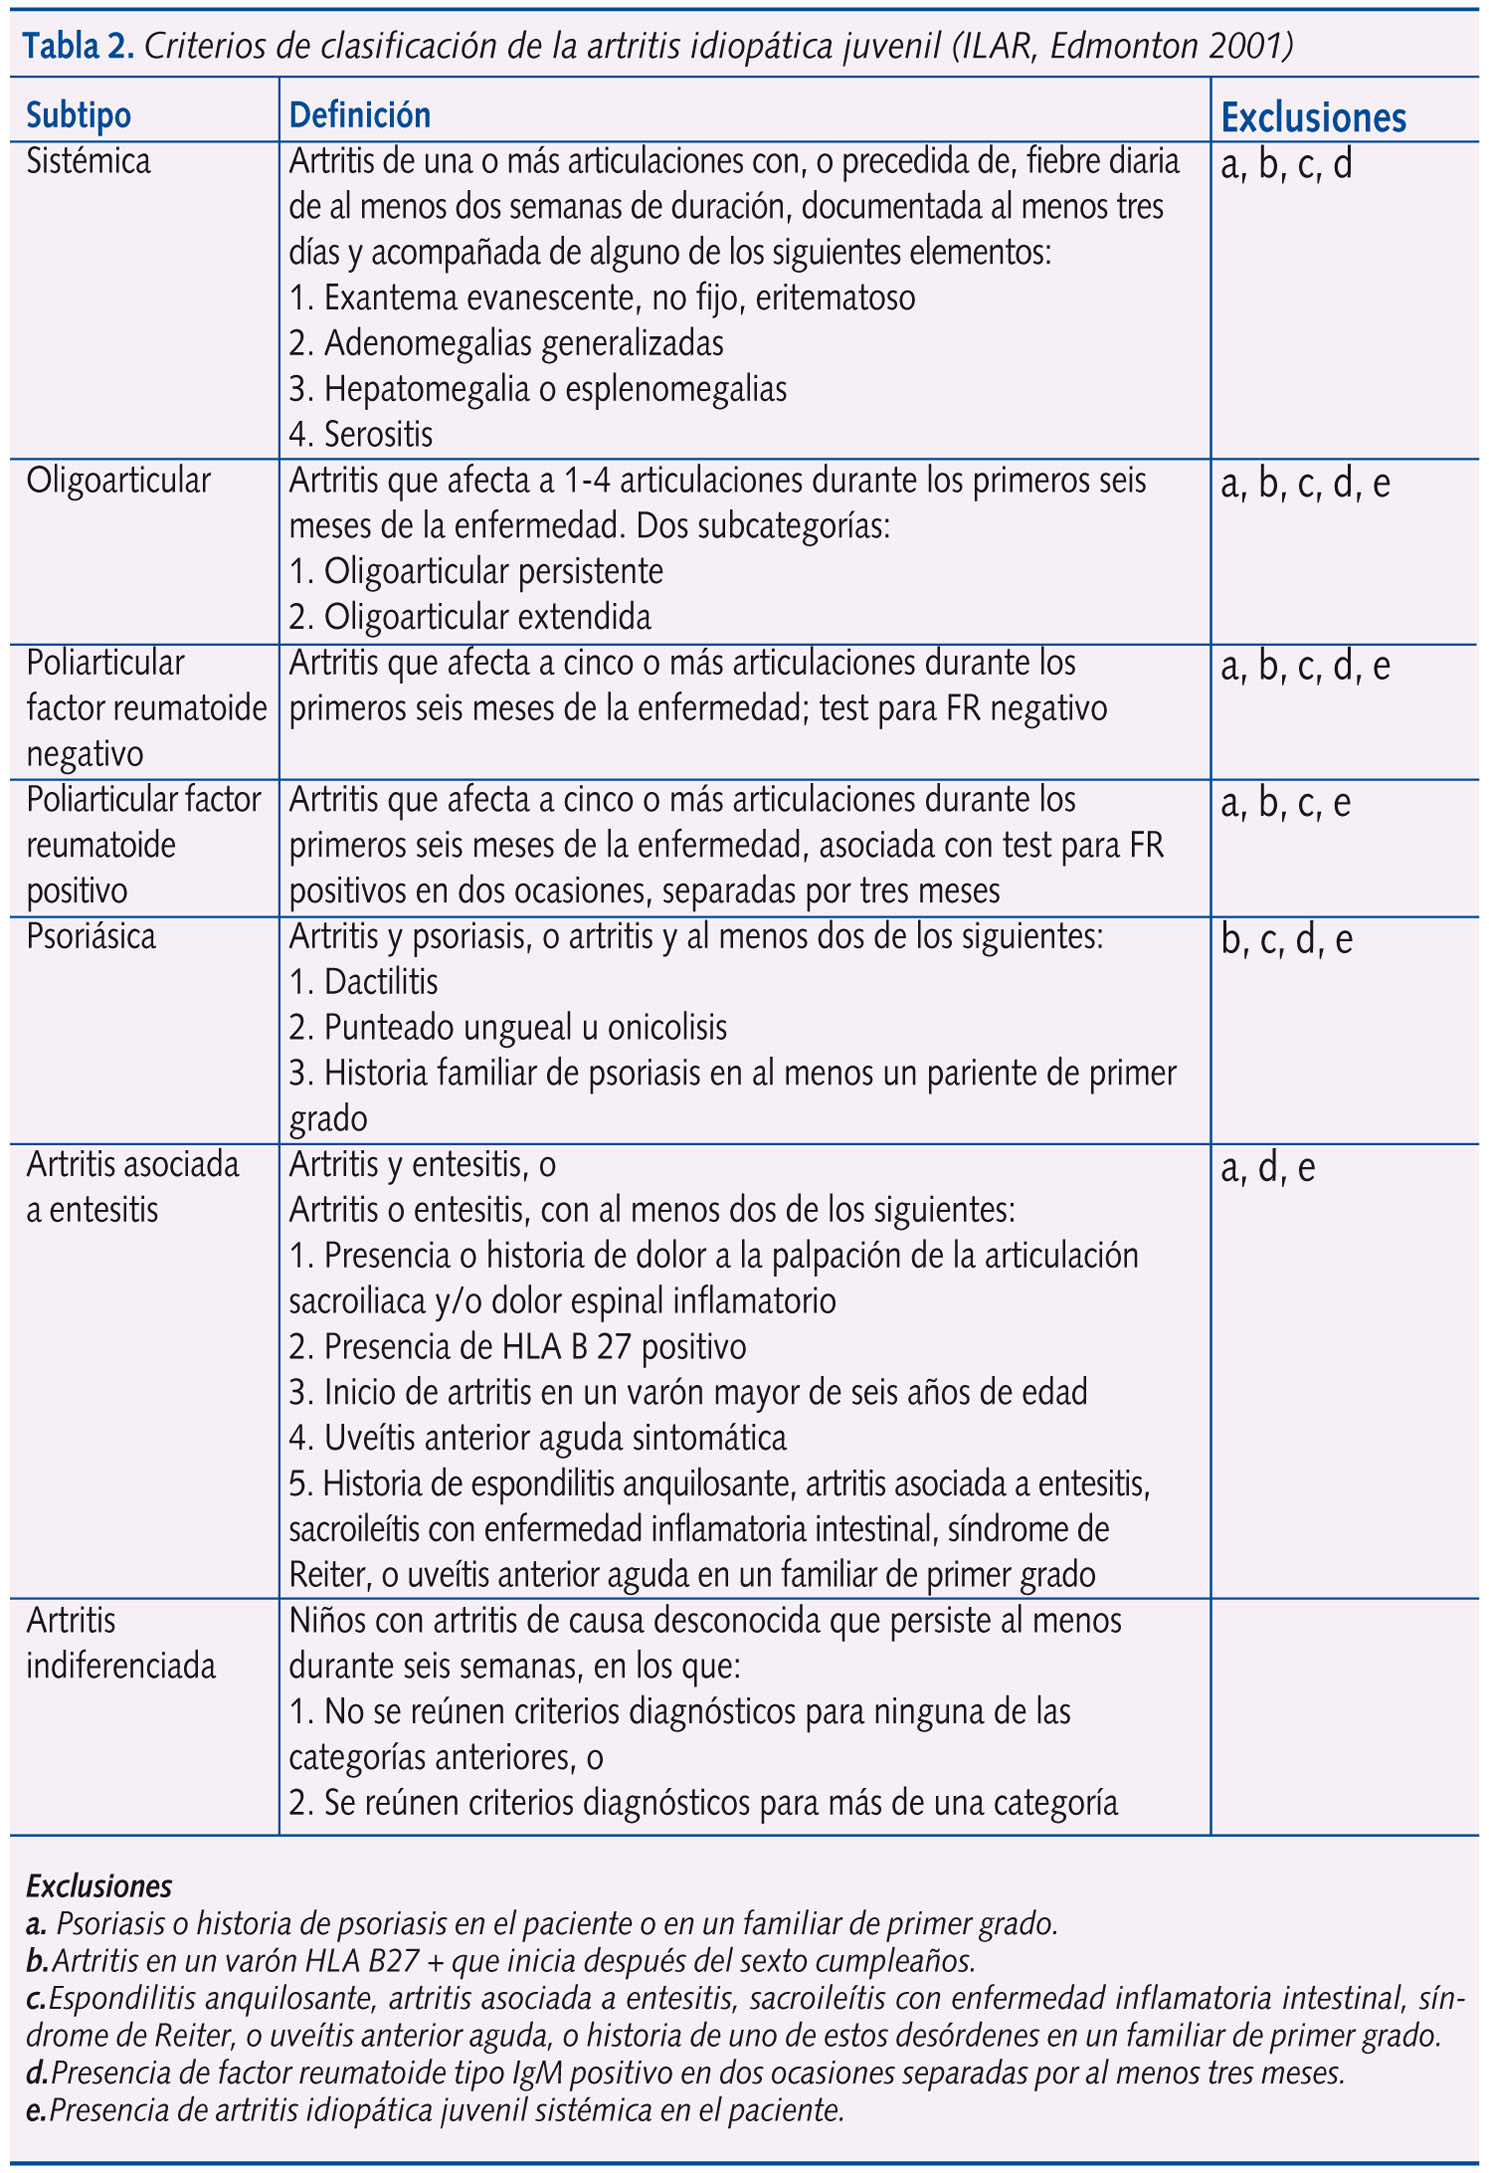 Tabla 2. Criterios de clasificación de la artritis idiopática juvenil (ILAR, Edmonton 2001)